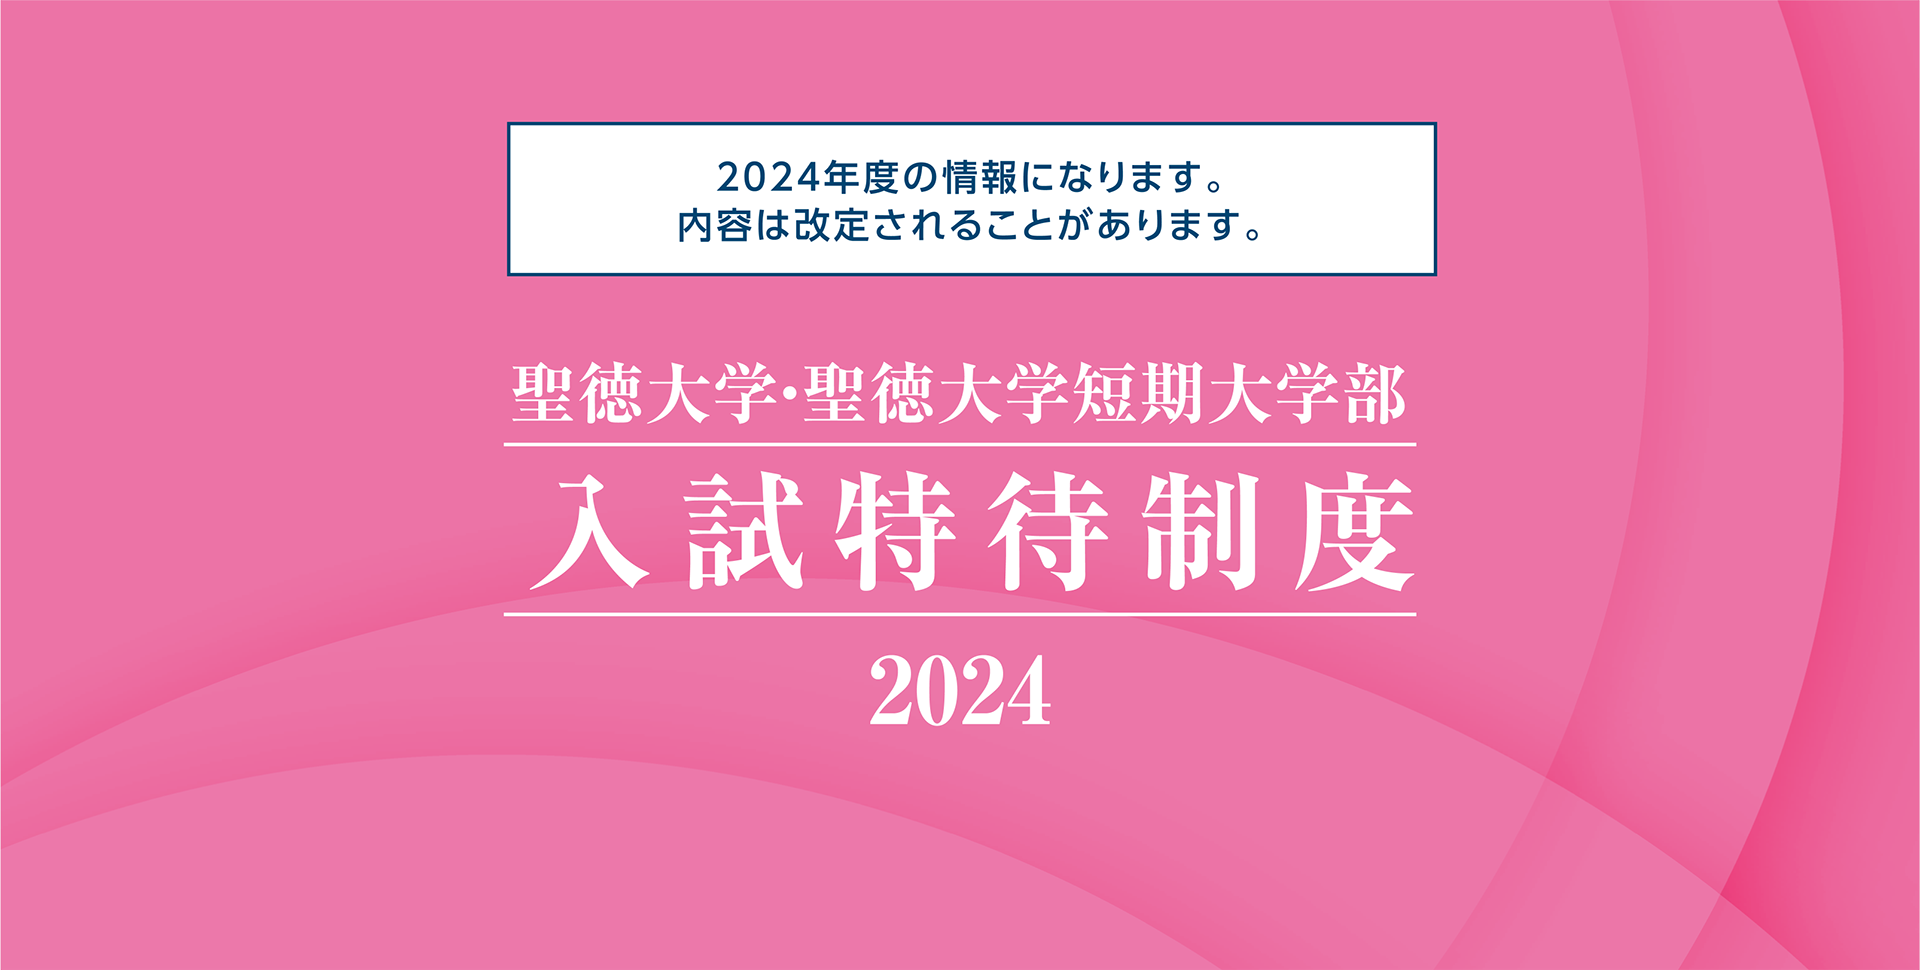 聖徳大学・聖徳大学短期大学部 入試特待制度 2024